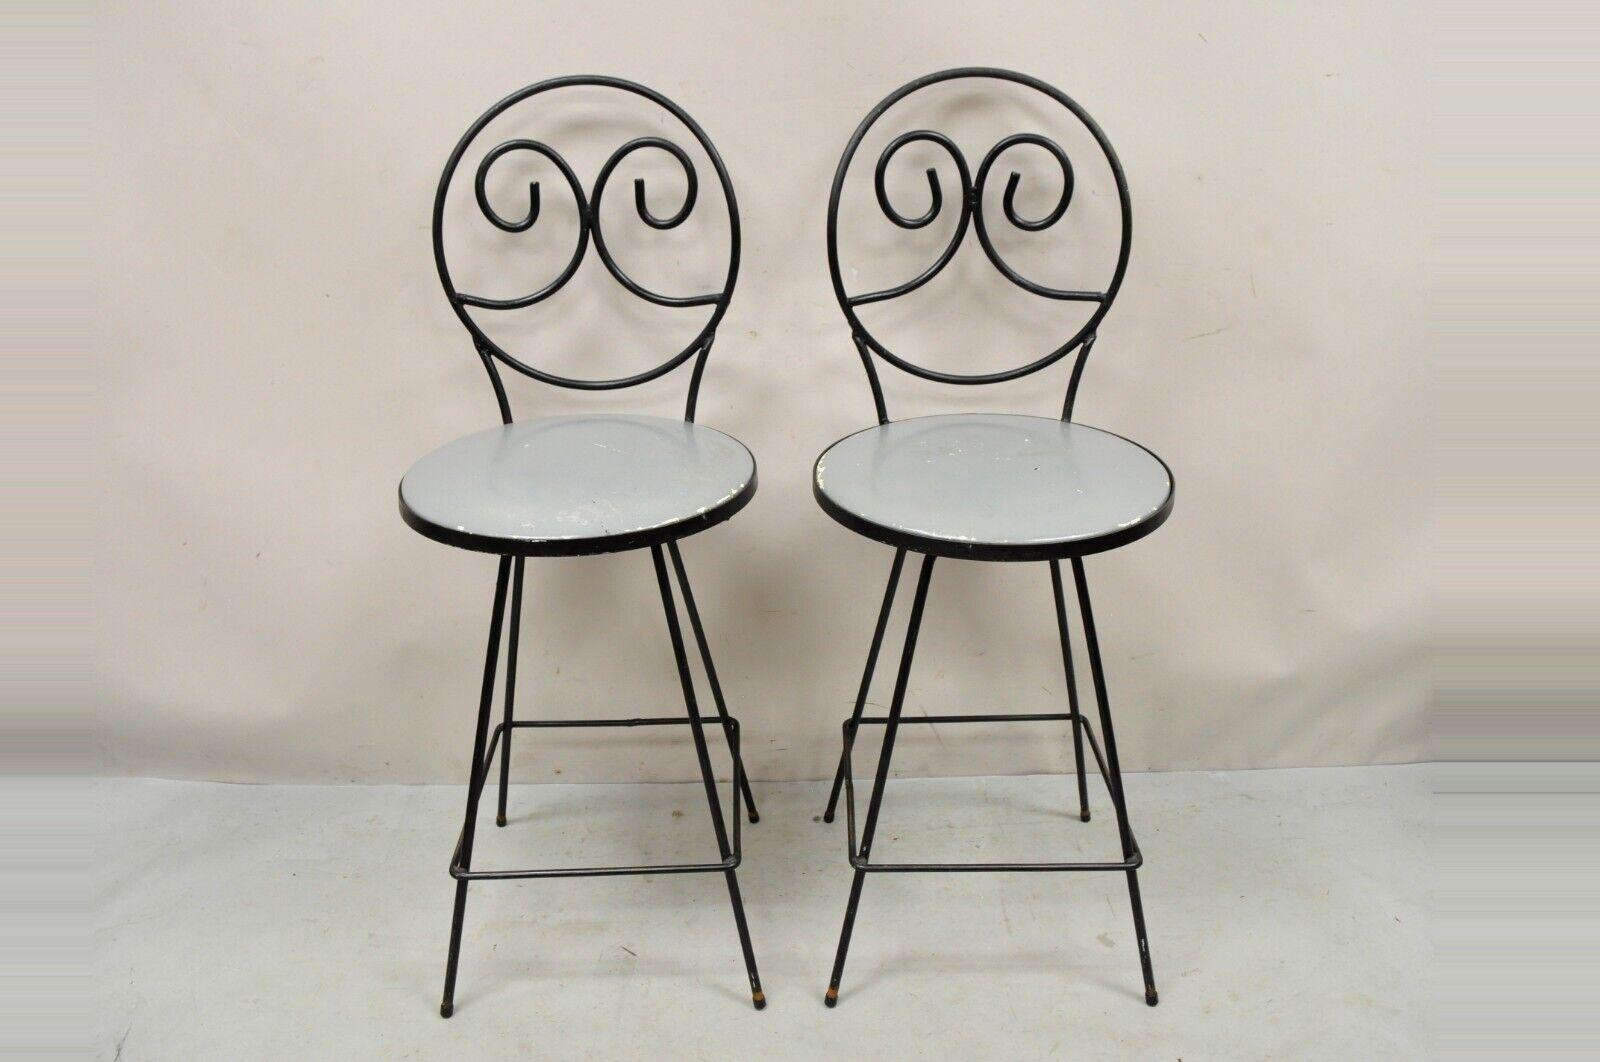 Mitte des Jahrhunderts Moderne Drehsitz Arthur Umanoff Stil Schmiedeeisen Hocker - ein Paar. Der Artikel zeichnet sich durch drehbare Sitze, schwere schmiedeeiserne Rahmen, quadratische Fußstützen, runde Rückenlehnen mit Scroll-Design, hochwertige